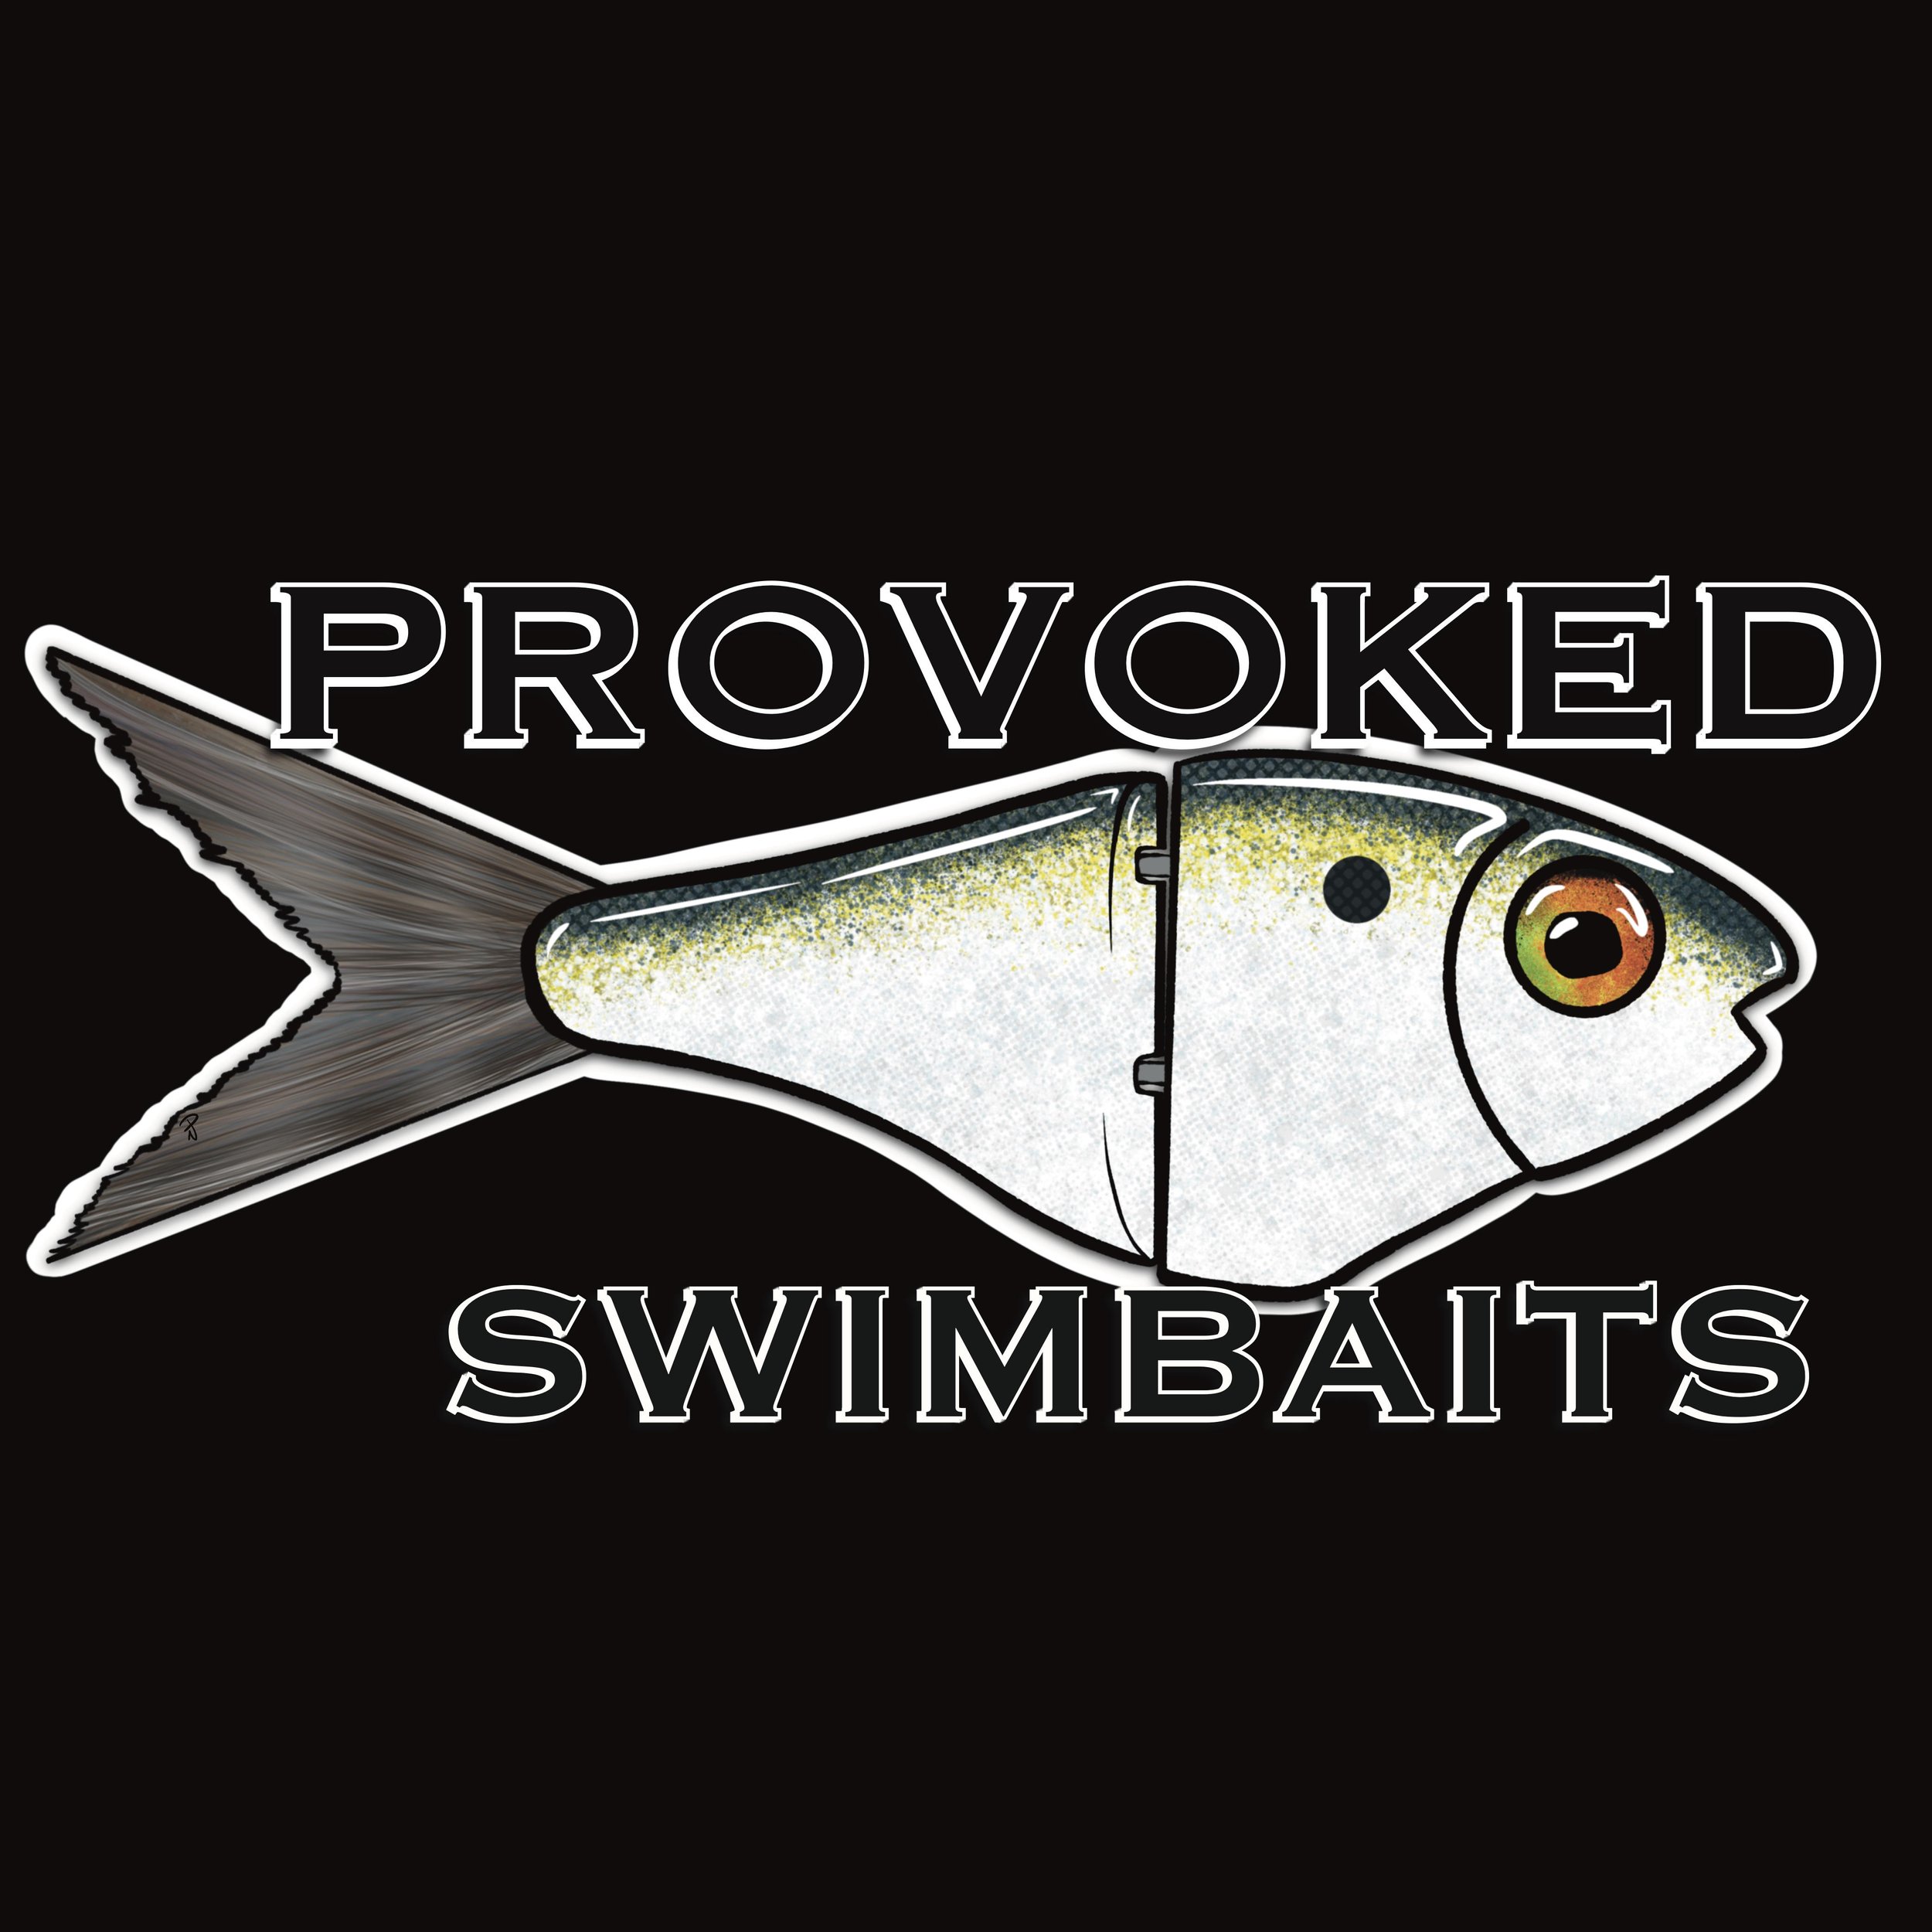 Provoked Swimbaits